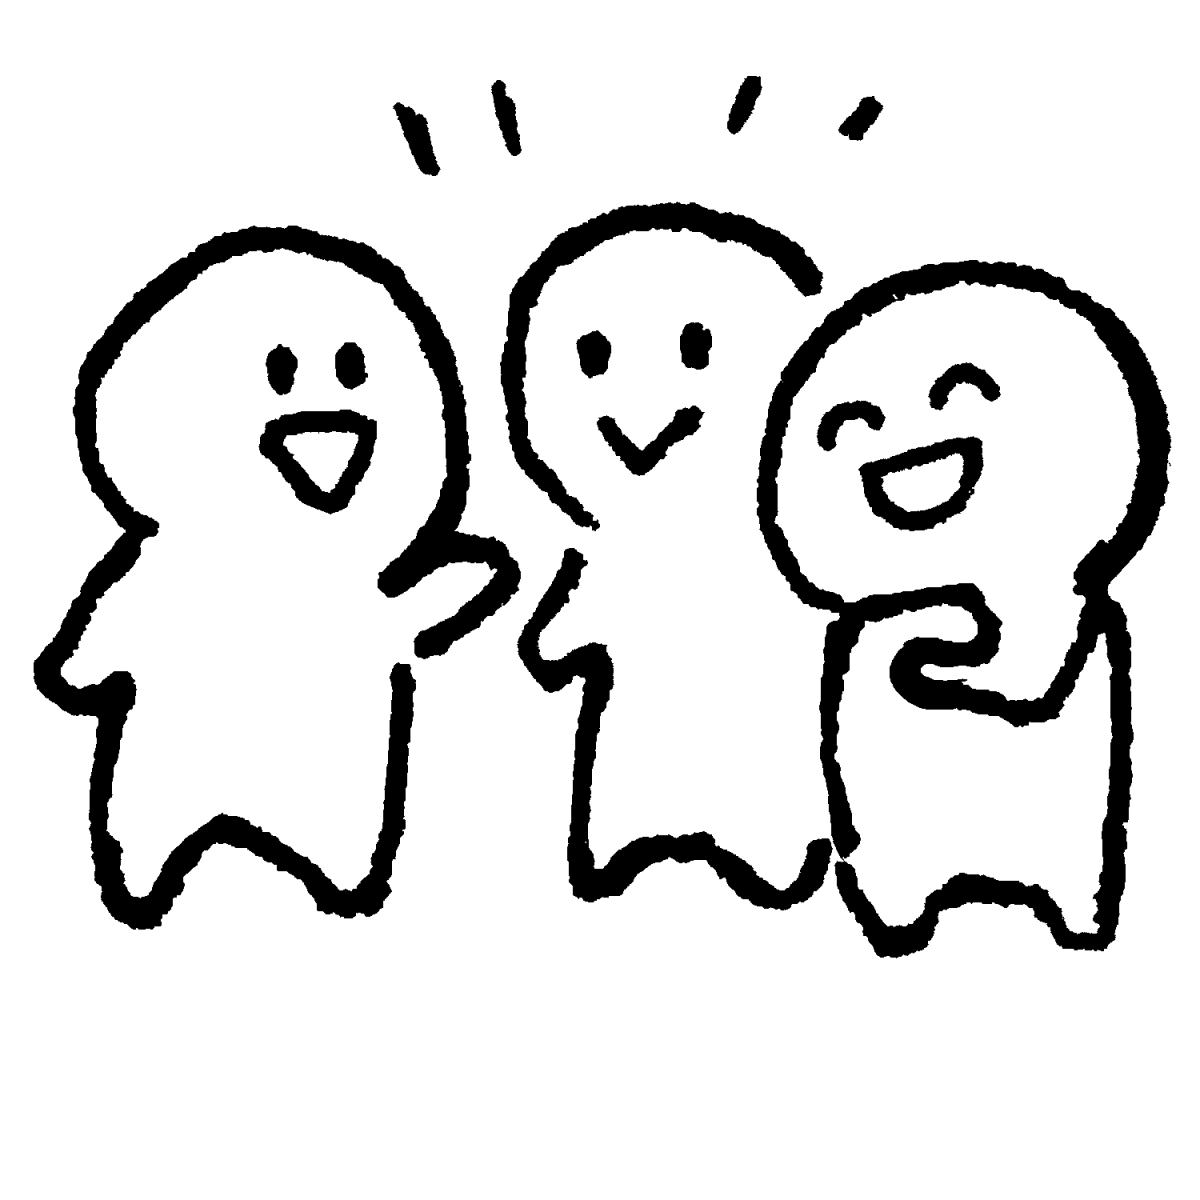 3人で立ち話のイラスト / Three people standing around talking. Illustration